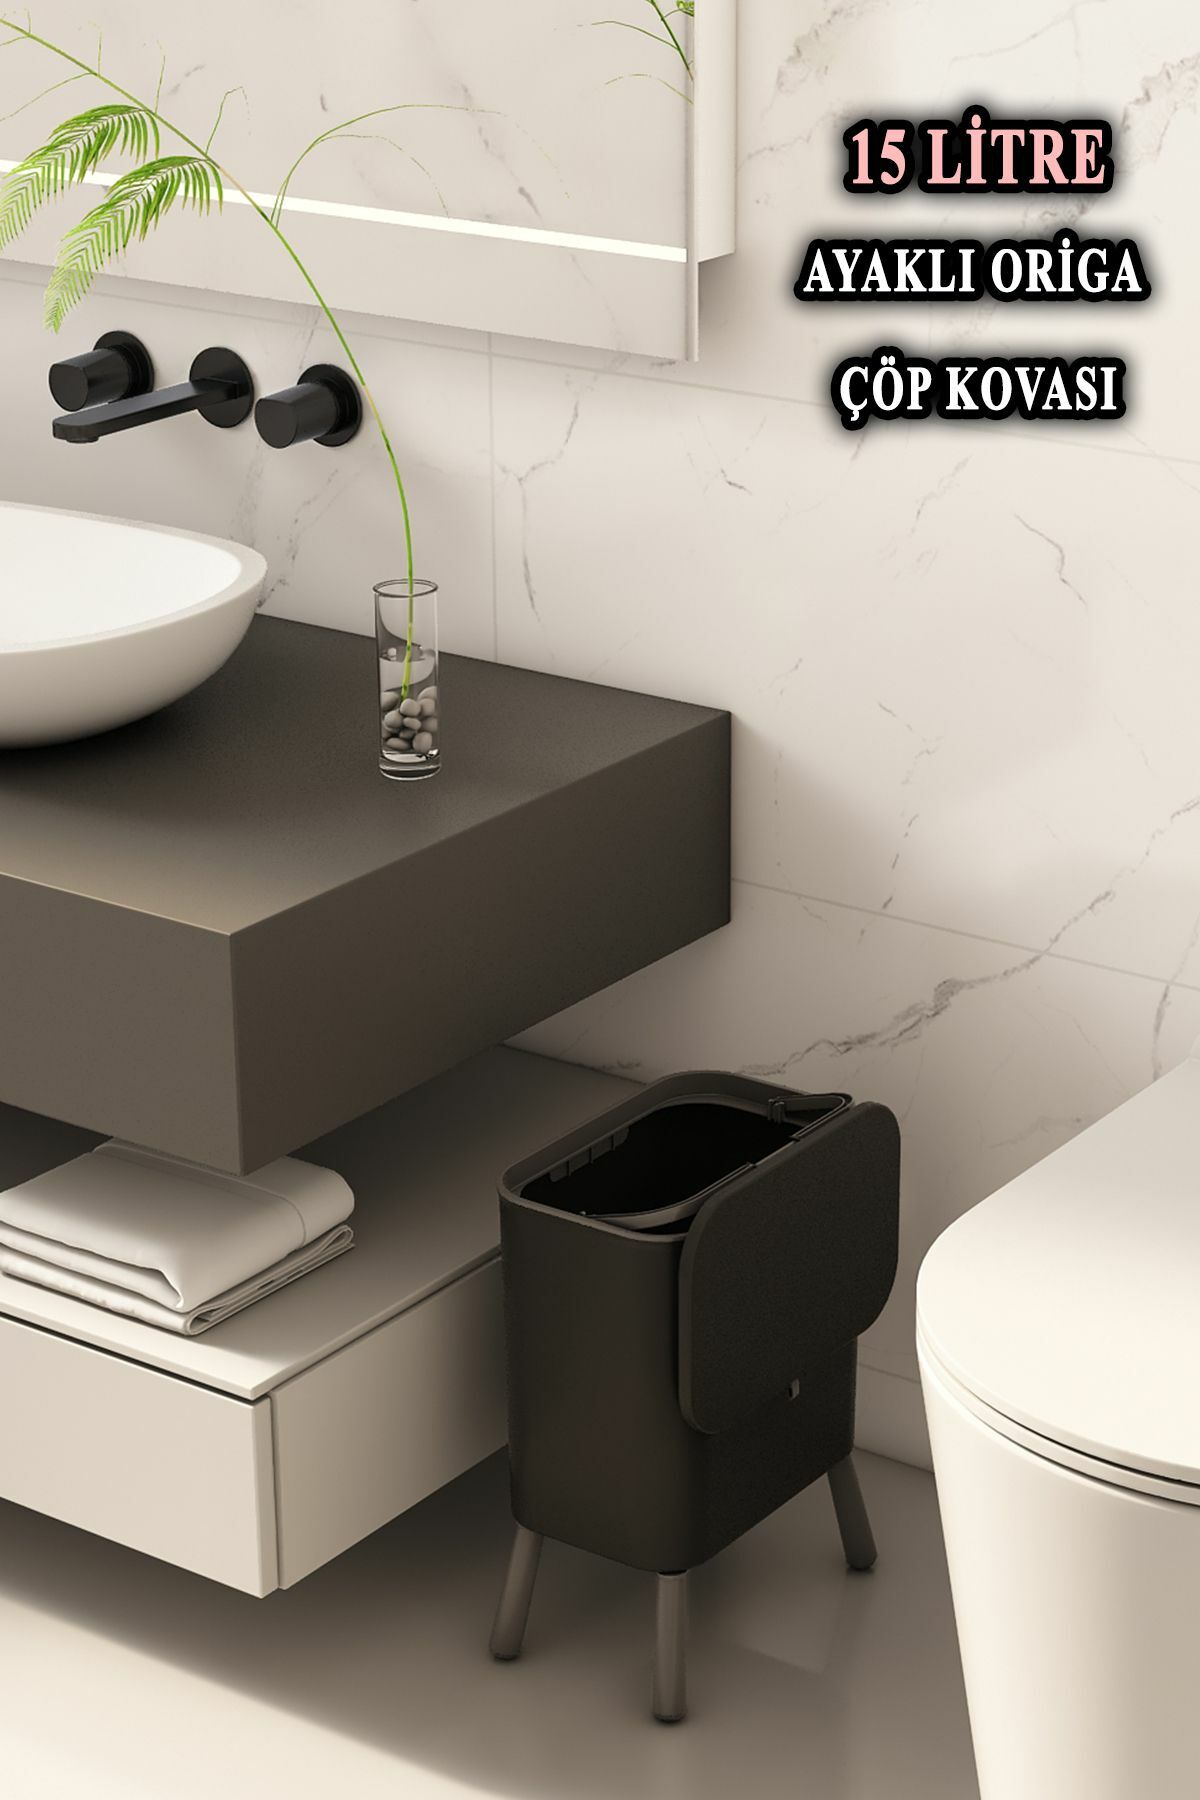 Origa Ayaklı Fonksiyonel Kapaklı Banyo Ve Mutfak Çöp Kovası Siyah